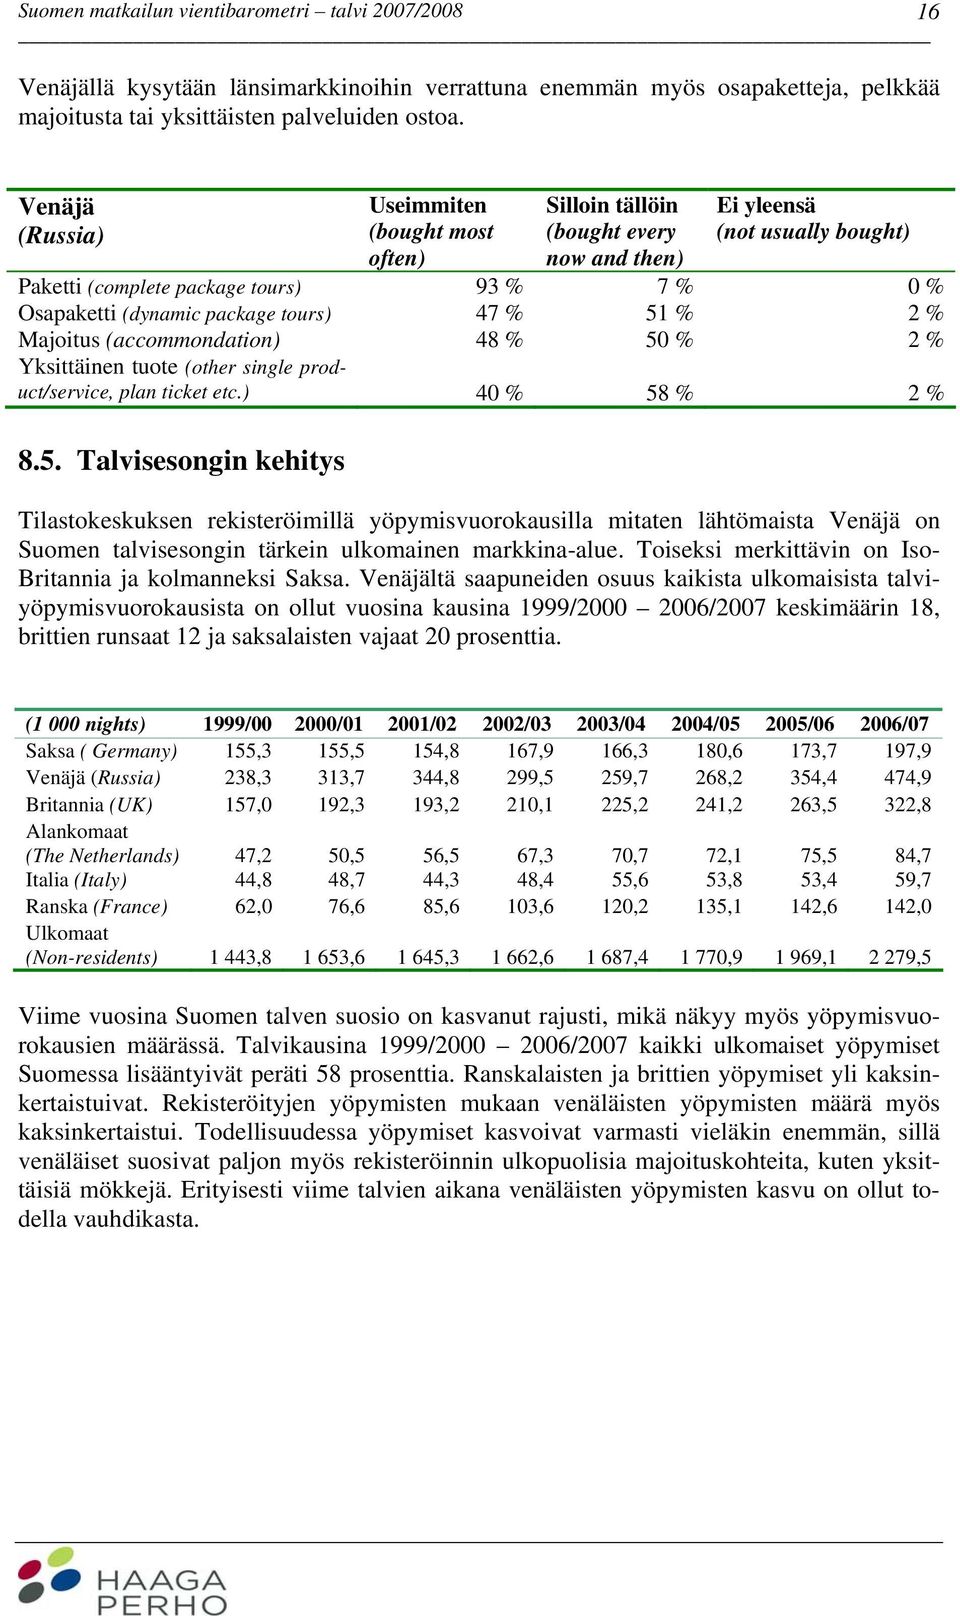 tours) 47 % 51 % 2 % Majoitus (accommondation) 48 % 50 % 2 % Yksittäinen tuote (other single product/service, plan ticket etc.) 40 % 58 % 2 % 8.5. Talvisesongin kehitys Tilastokeskuksen rekisteröimillä yöpymisvuorokausilla mitaten lähtömaista Venäjä on Suomen talvisesongin tärkein ulkomainen markkina-alue.